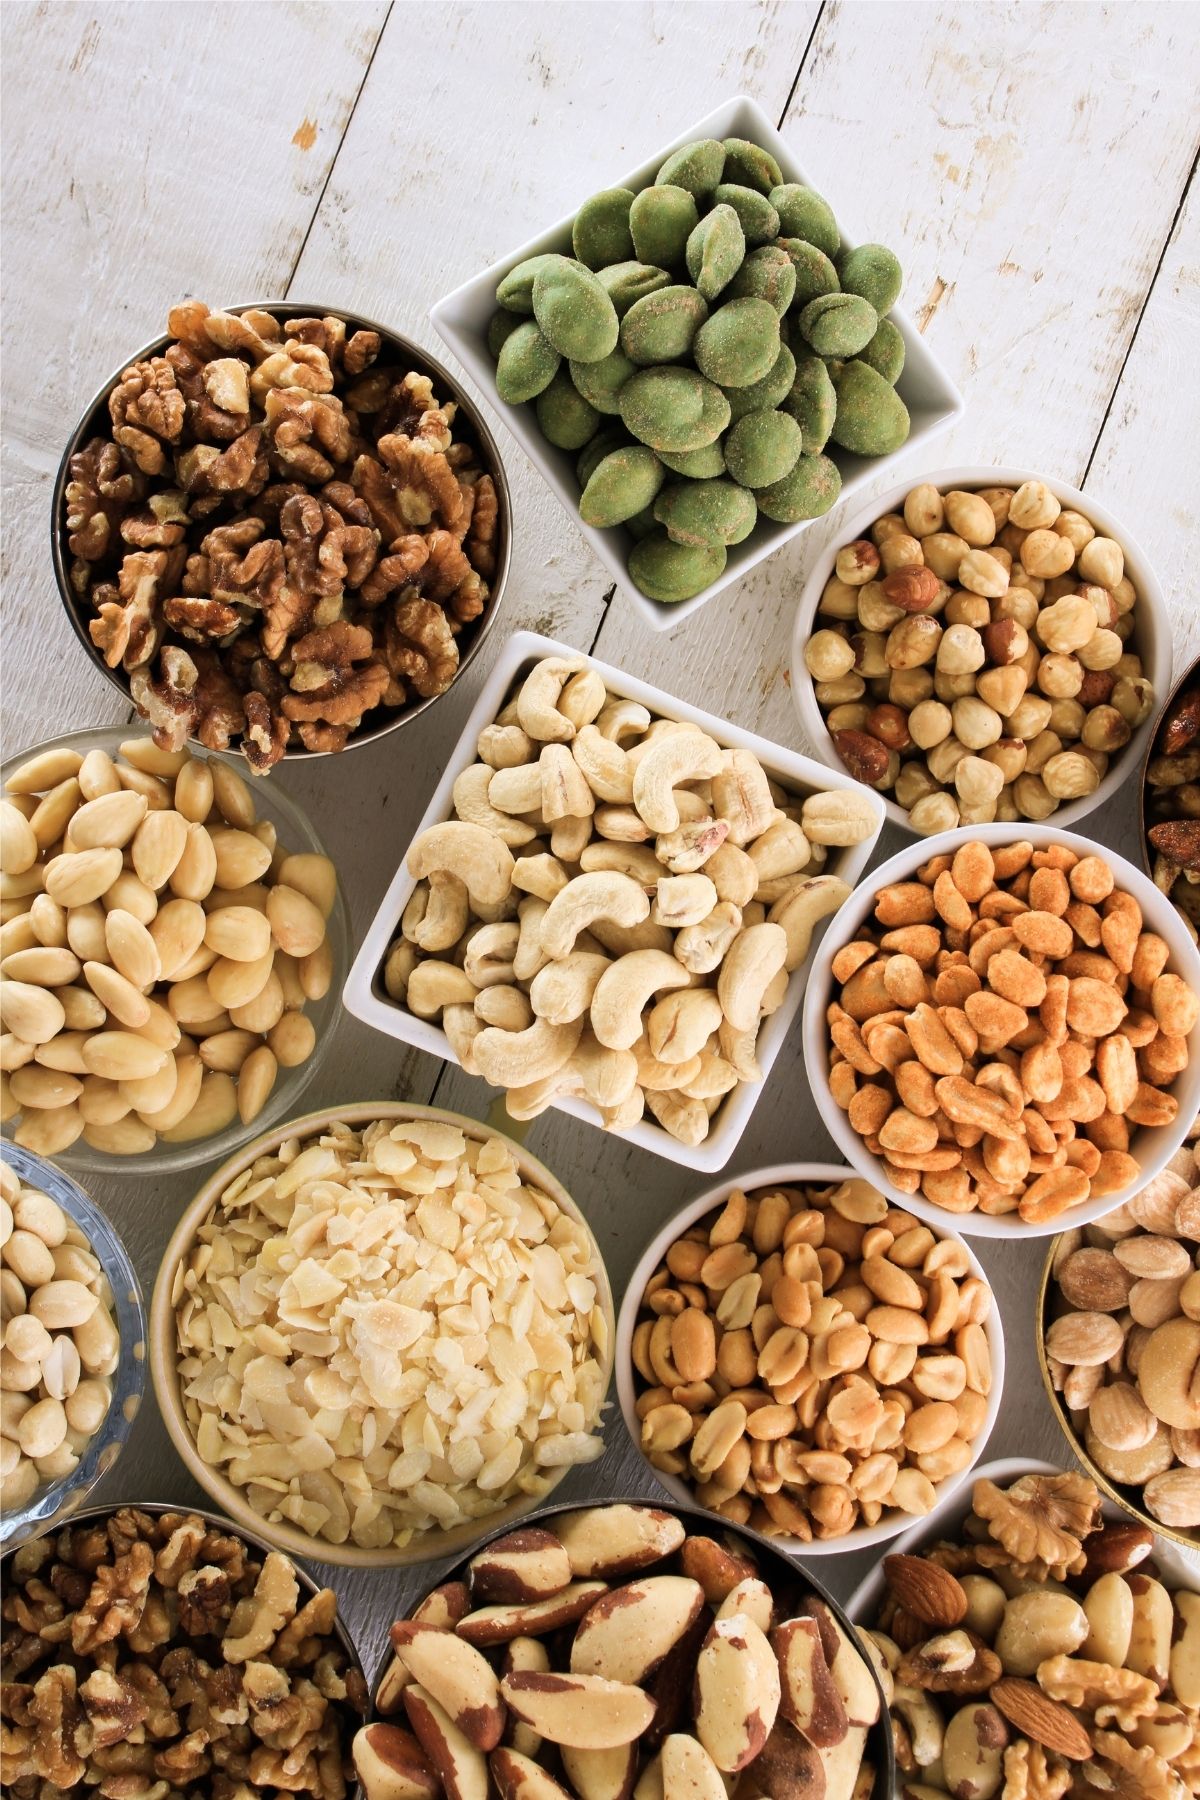 Bowls of various nuts